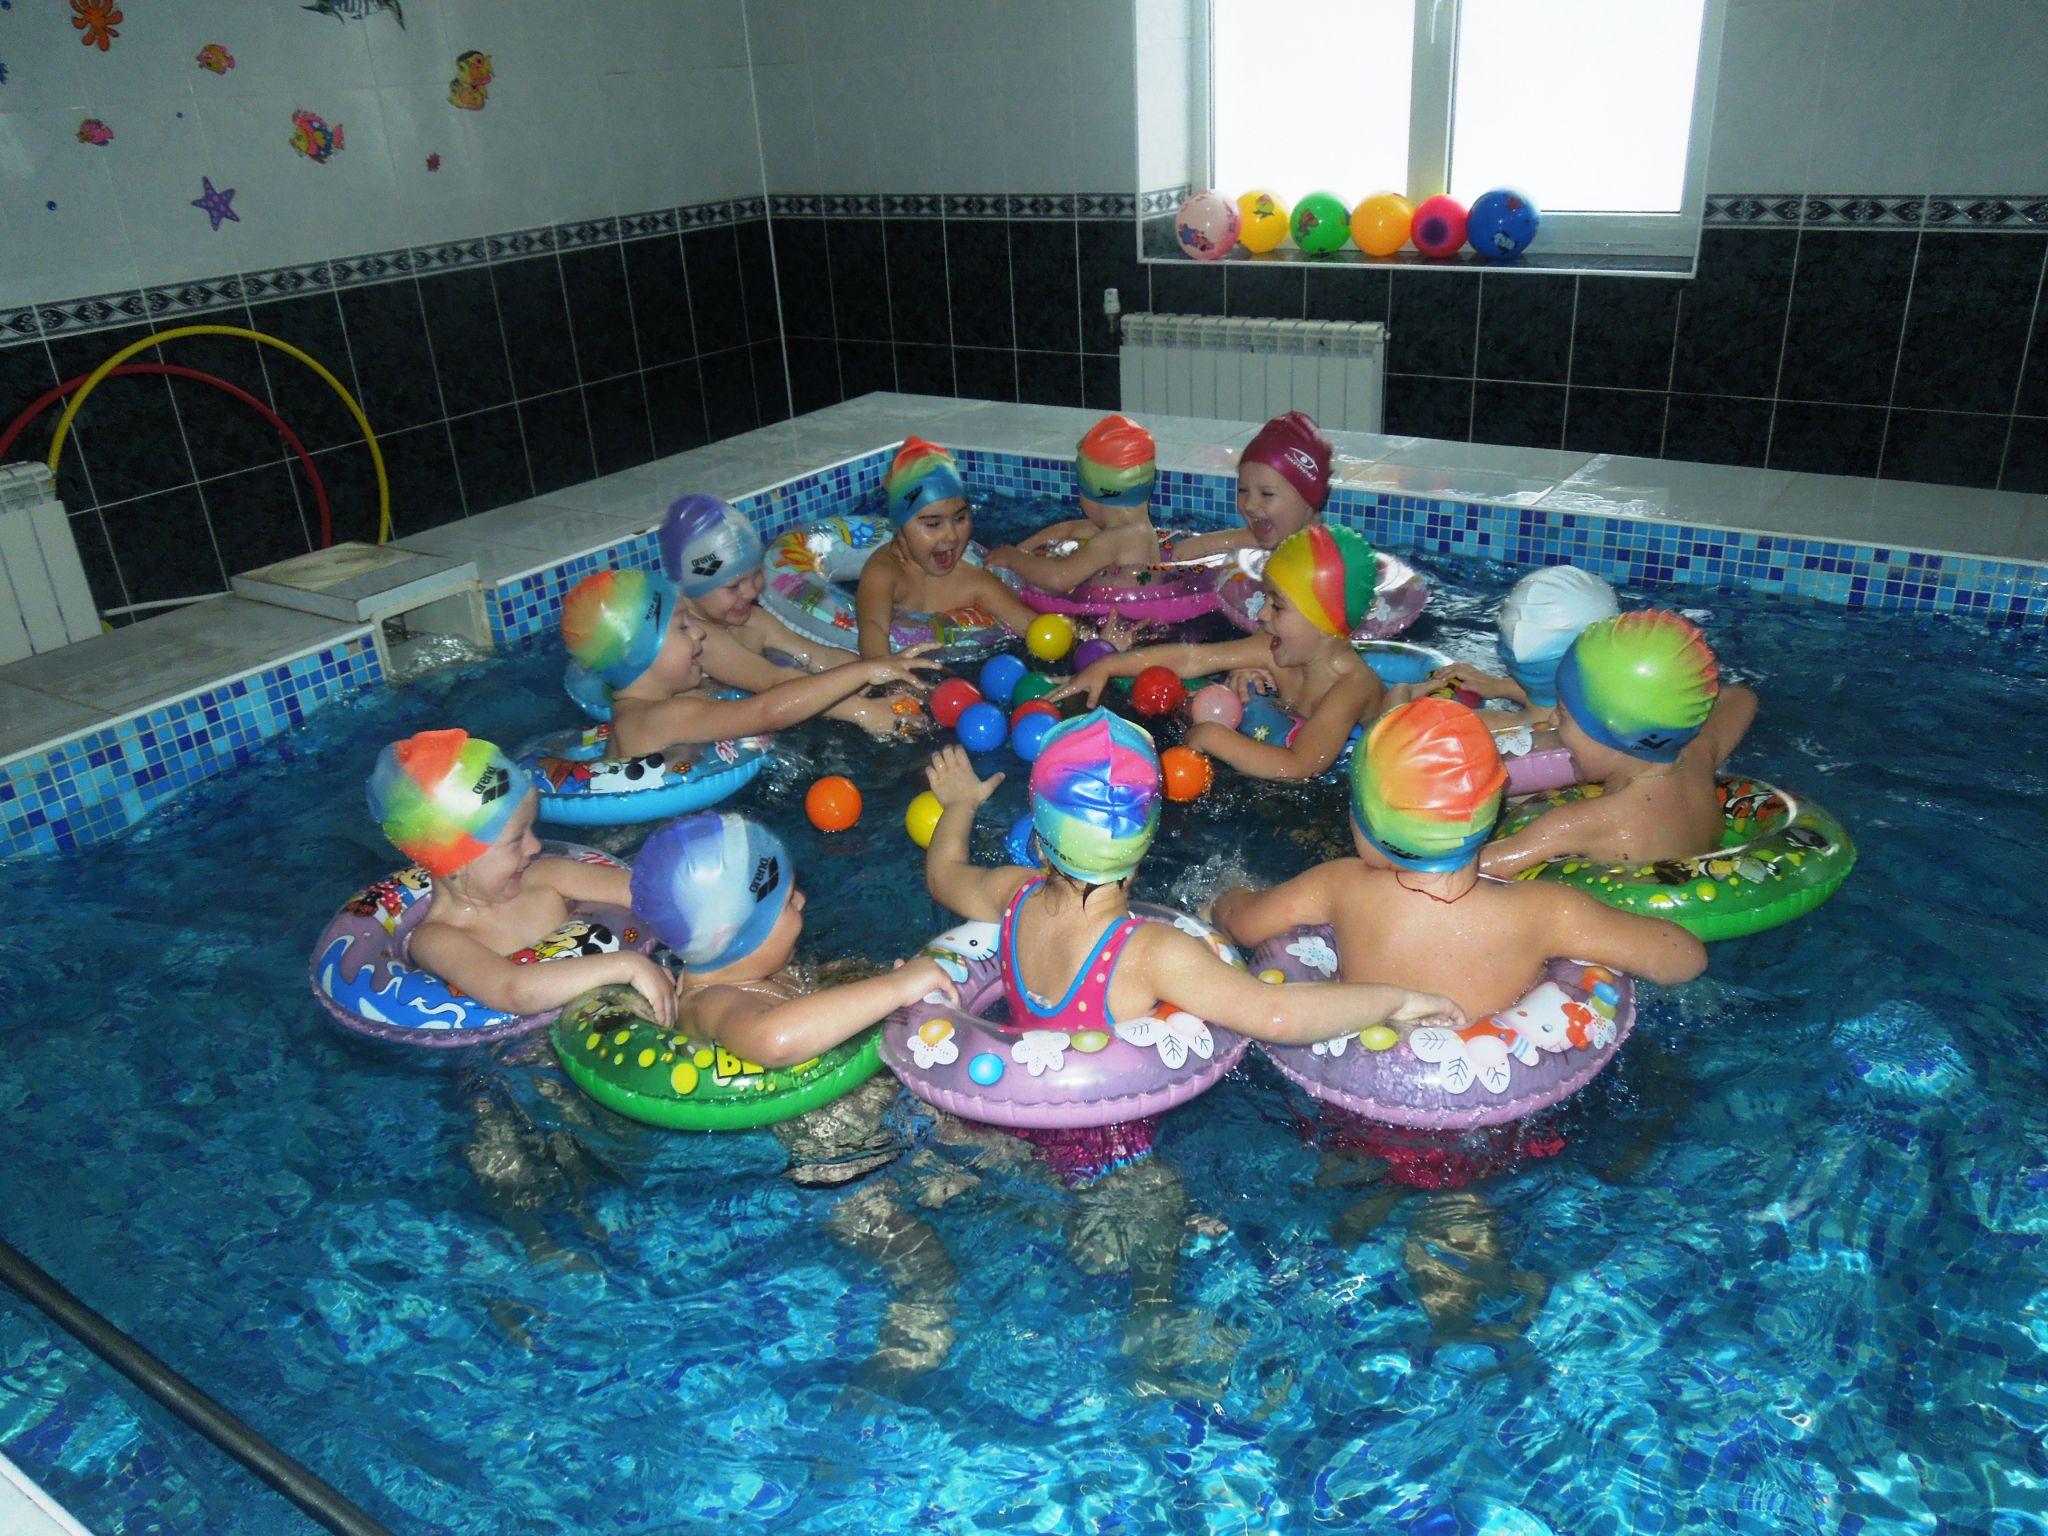 Майже 400 чернівецьких дітей отримали можливість займатись плаванням протягом усього року